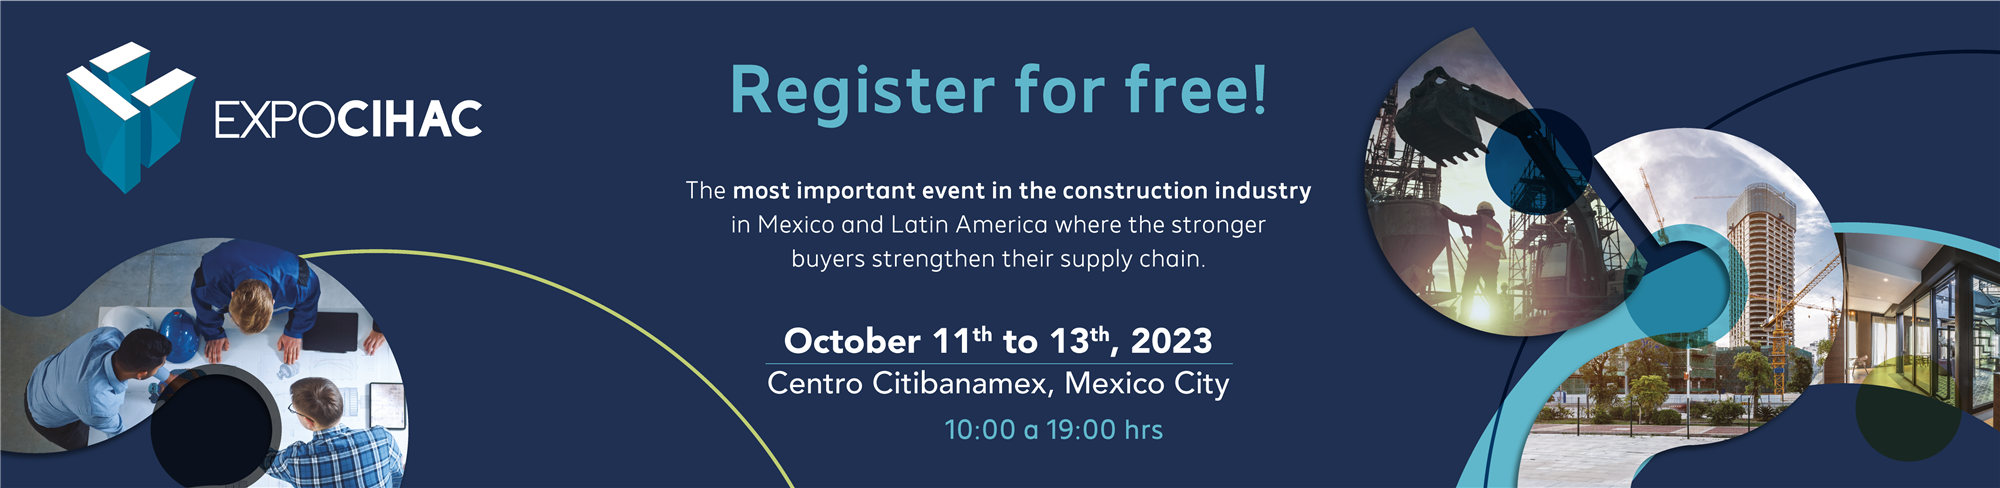 دعوة EXPO CIHAC 2023 المكسيك من شركة دوزان للفسيفساء والبلاط